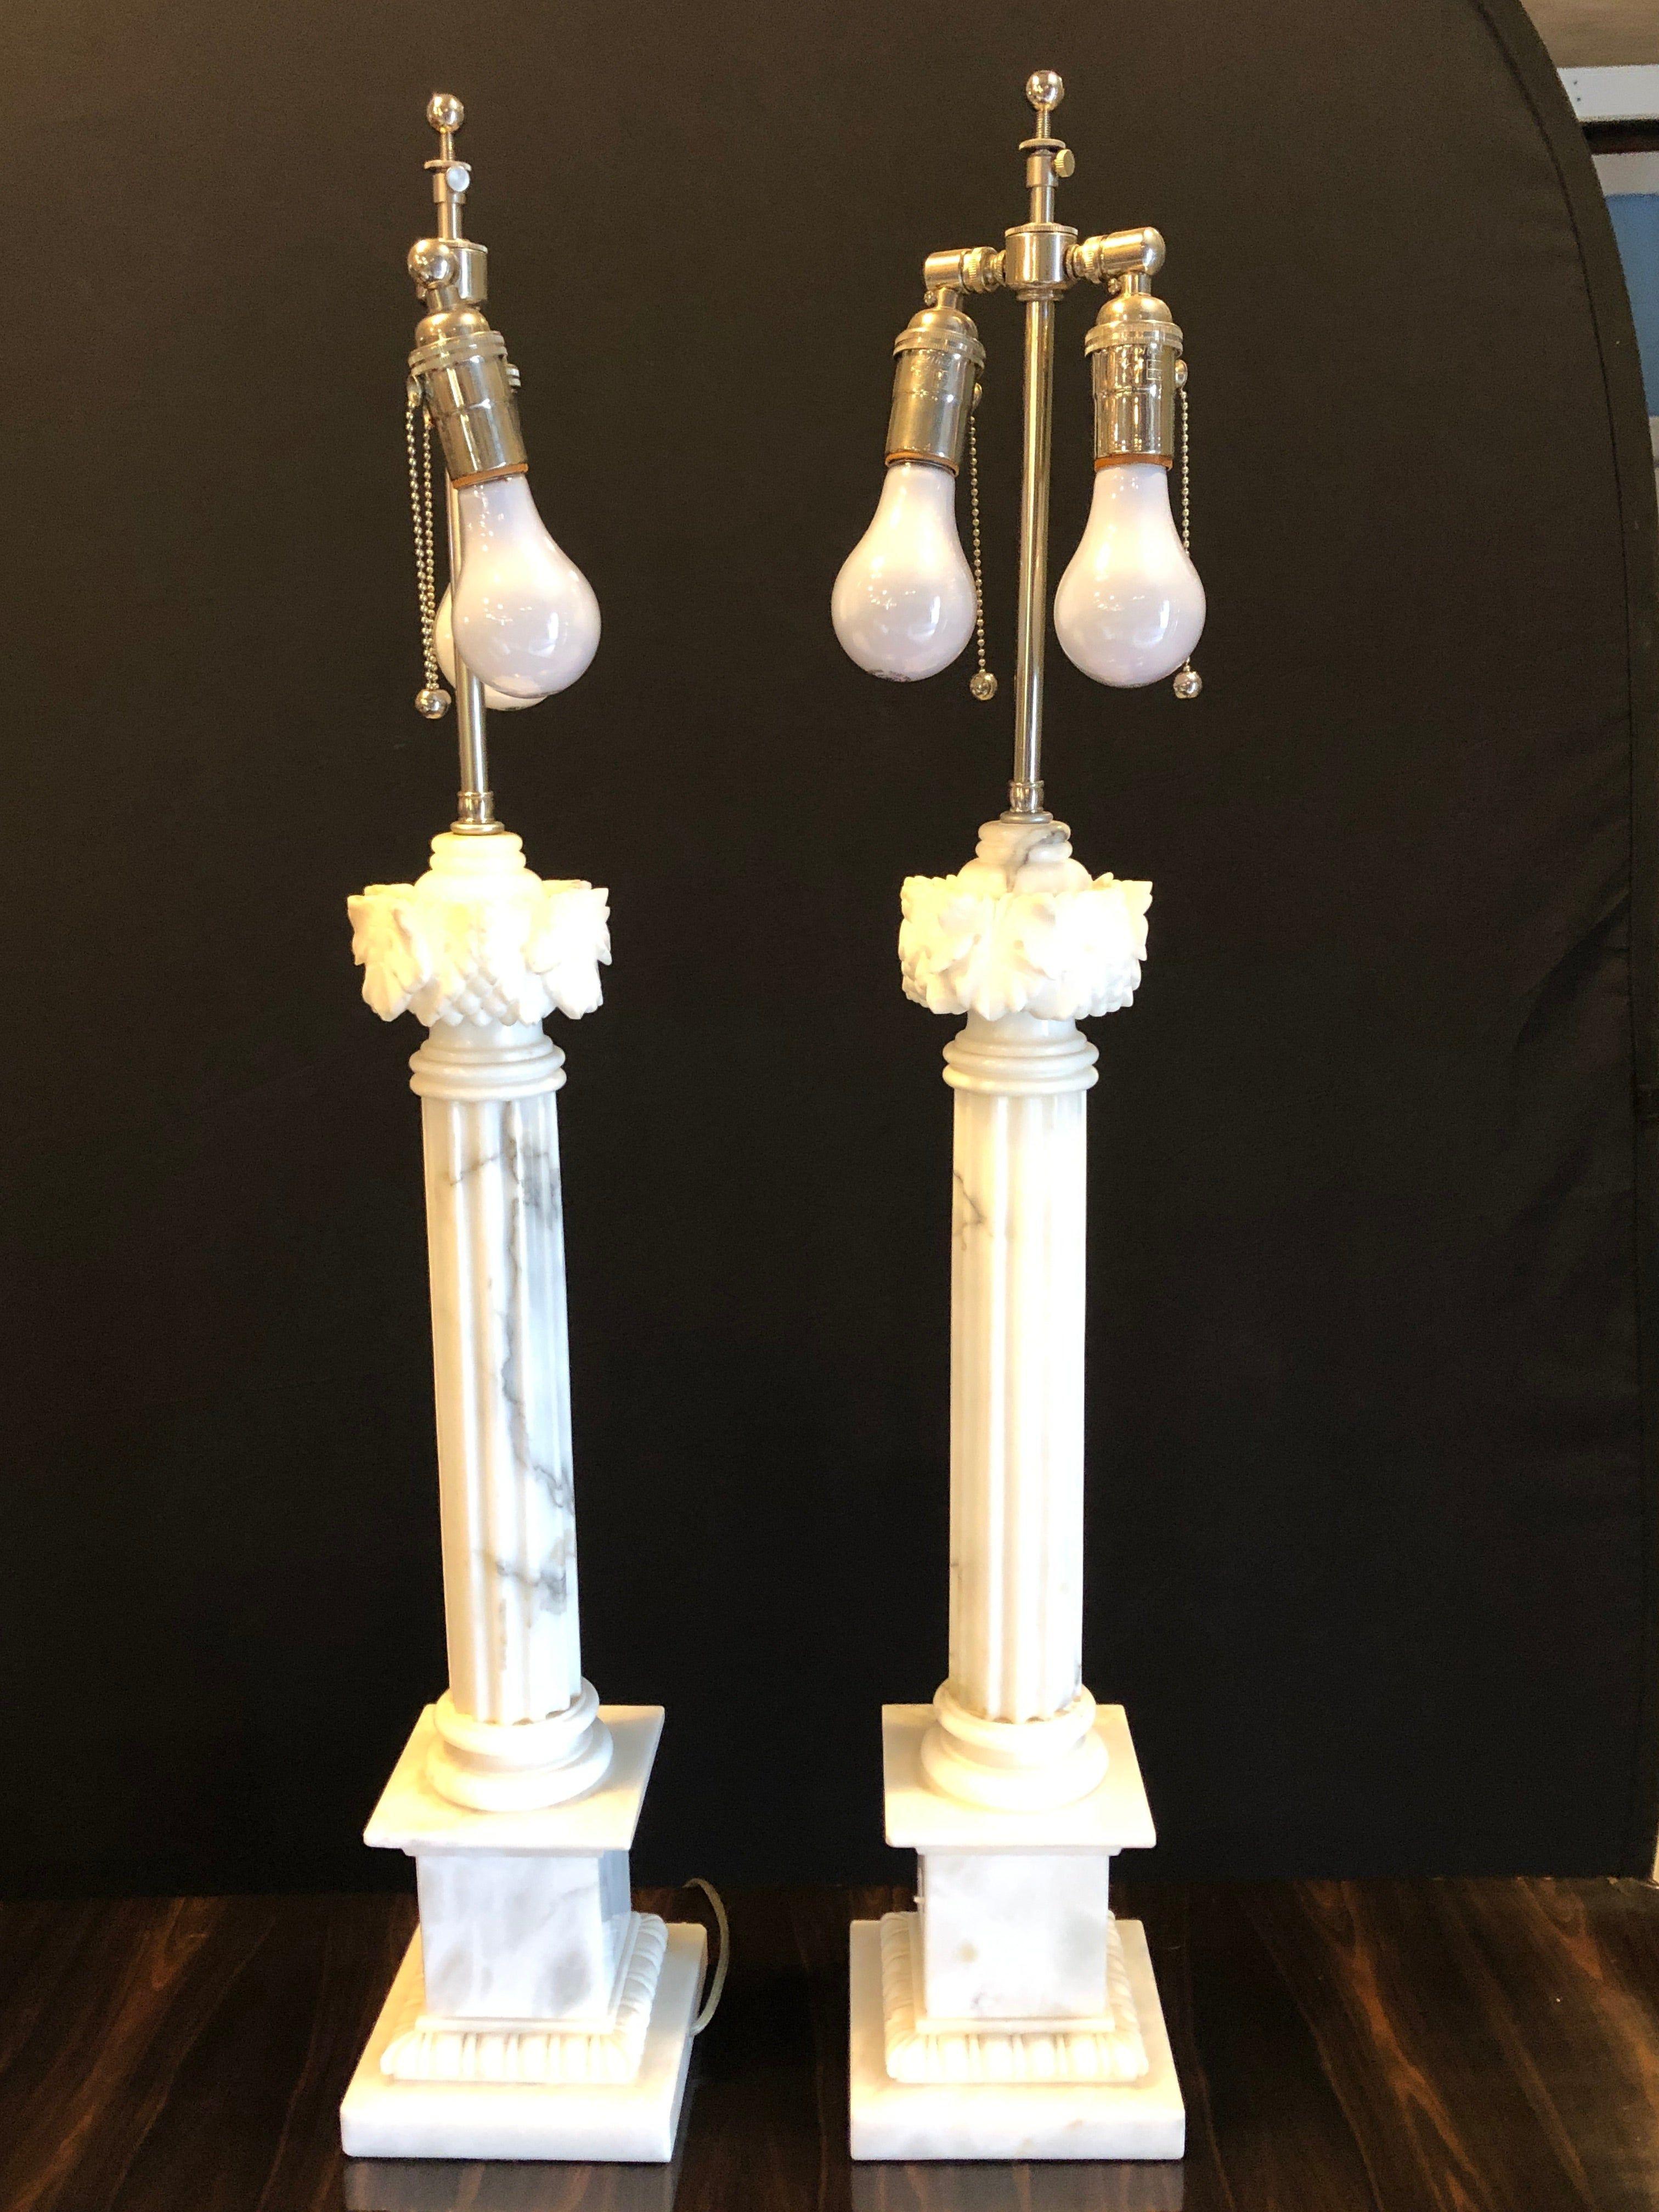 Ein Paar weiß und grau geäderte Säulenmarmor-Tischlampen mit maßgefertigten Lampenschirmen.
Marmorsäule 24 Zoll.